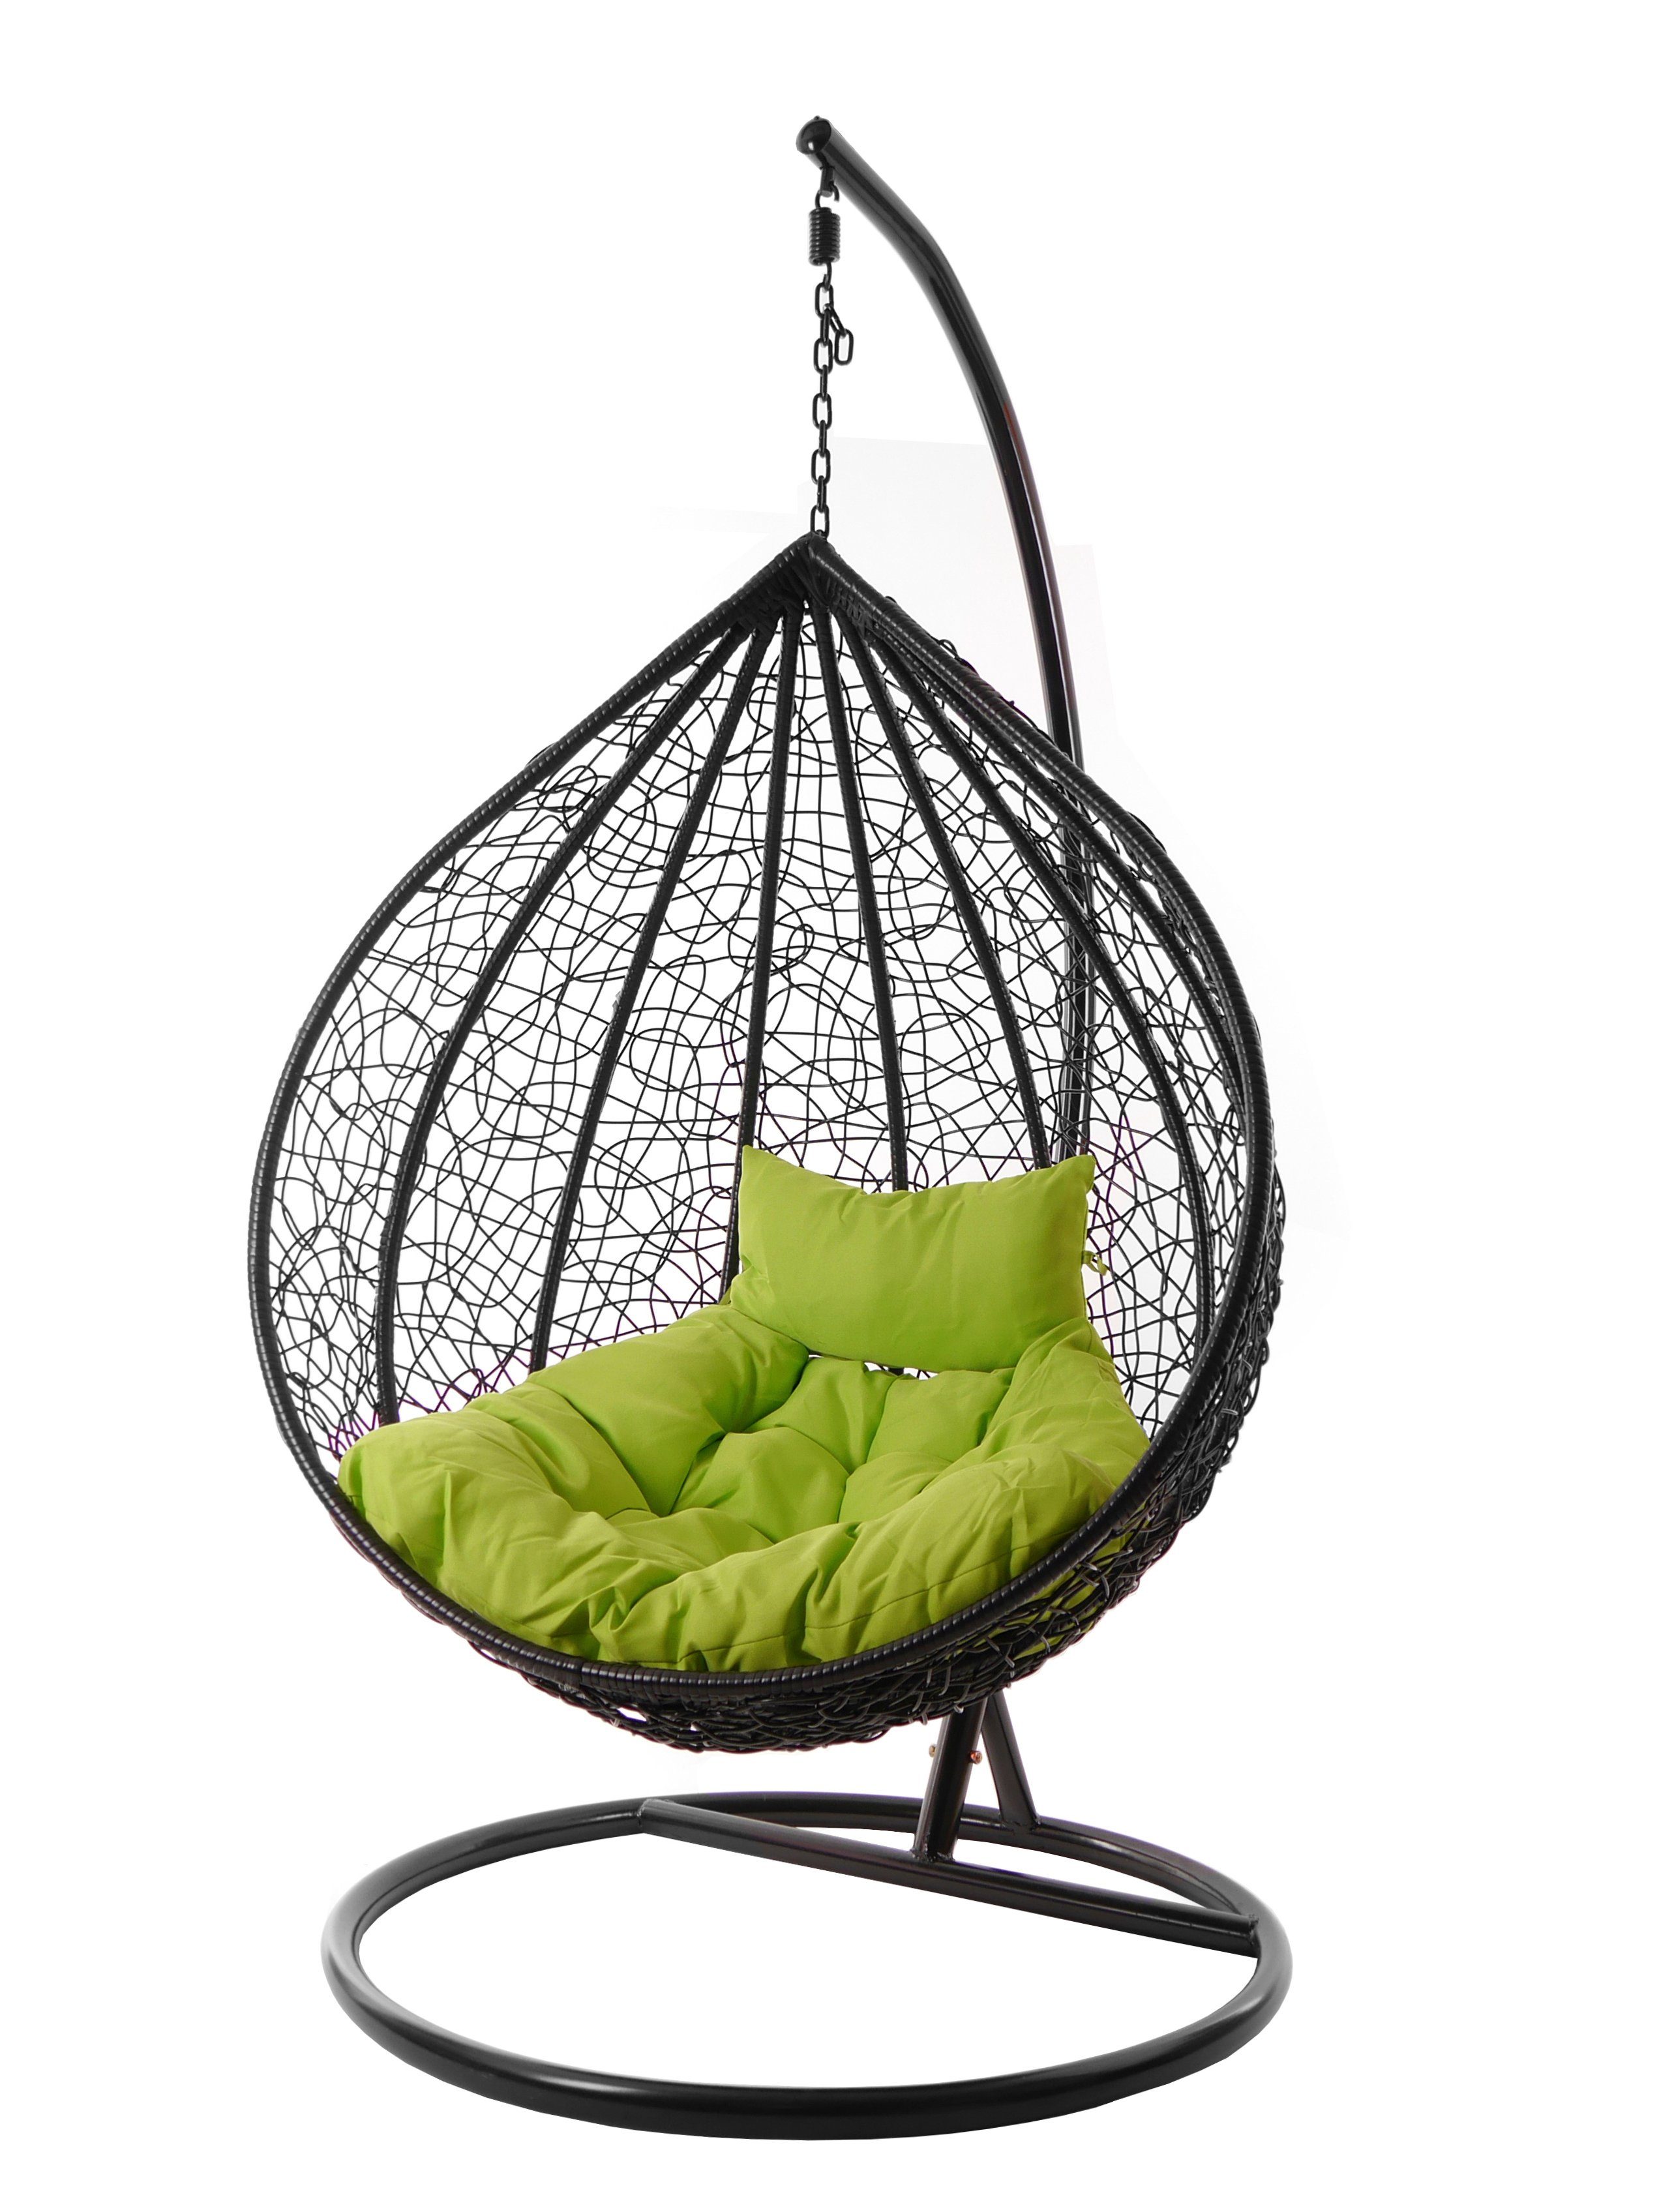 KIDEO Hängesessel Hängesessel MANACOR schwarz, edles schwarz, moderner Swing Chair, Schwebesessel inklusive Gestell und Kissen apfelgrün (6068 apple green)